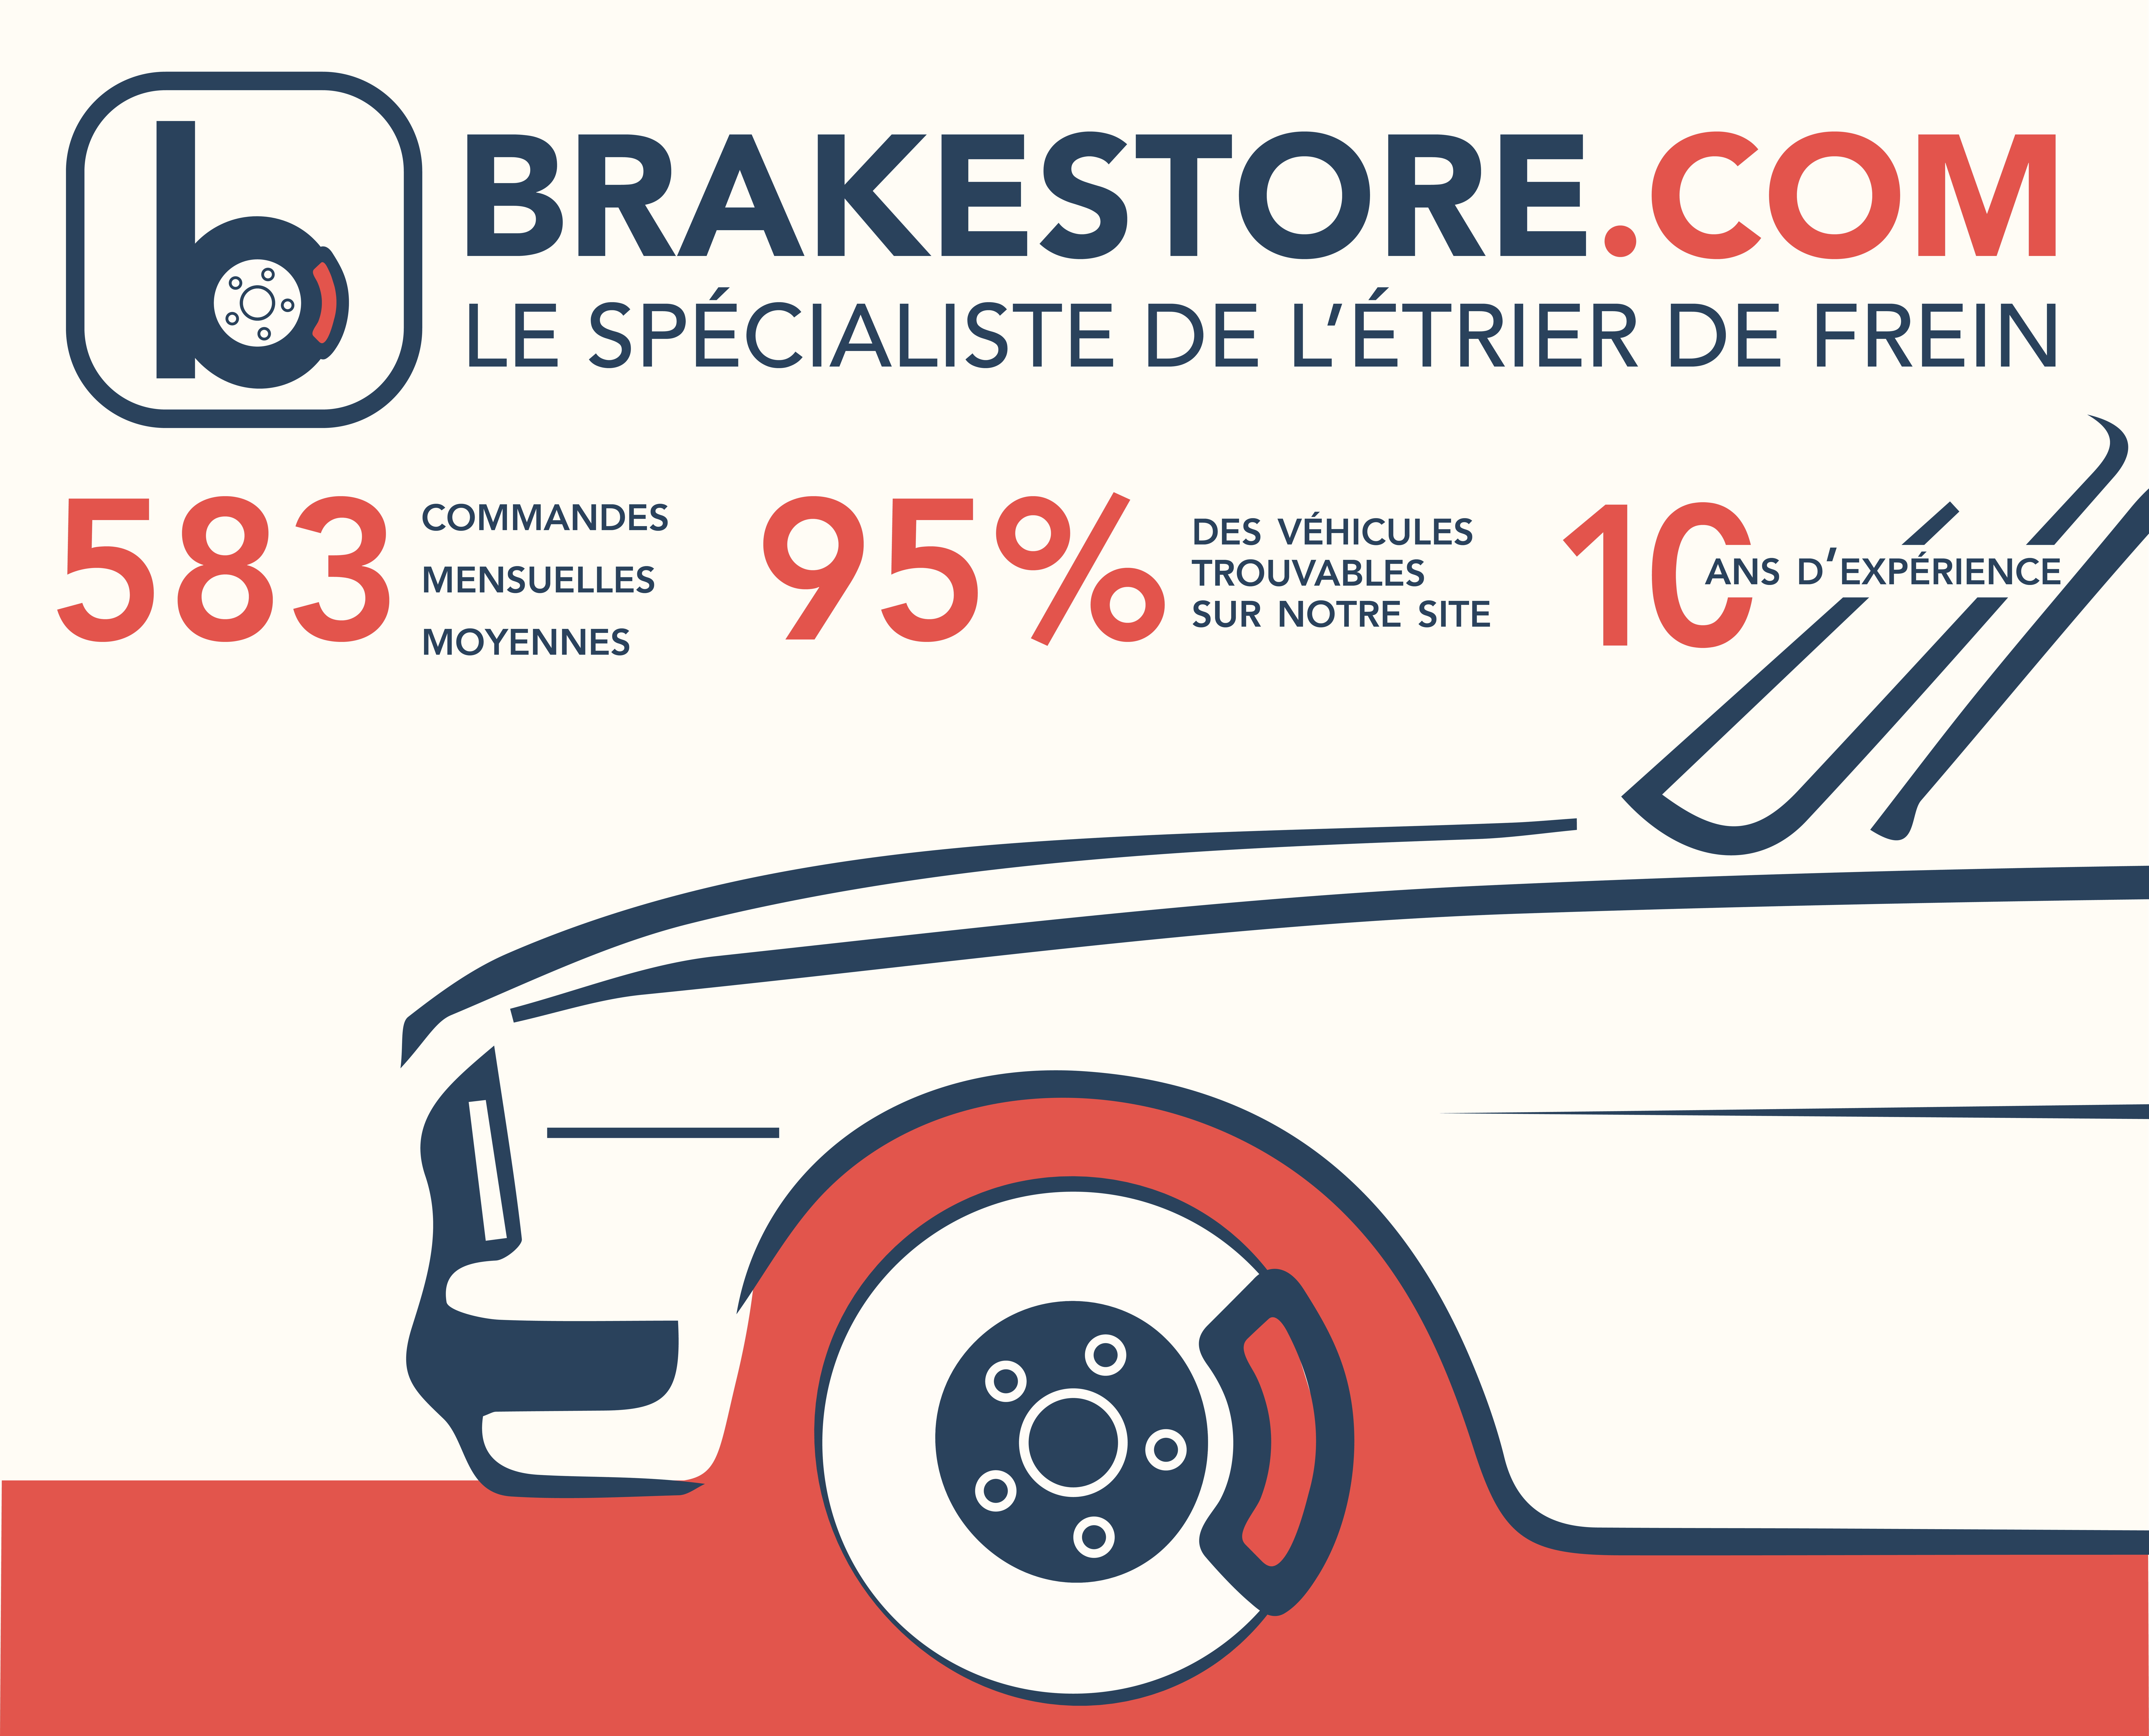 Brakestore c'est 593 commandes mensuelles, 95% de véhicules trouvables sur notre site et déjà 5 ans d'expérience